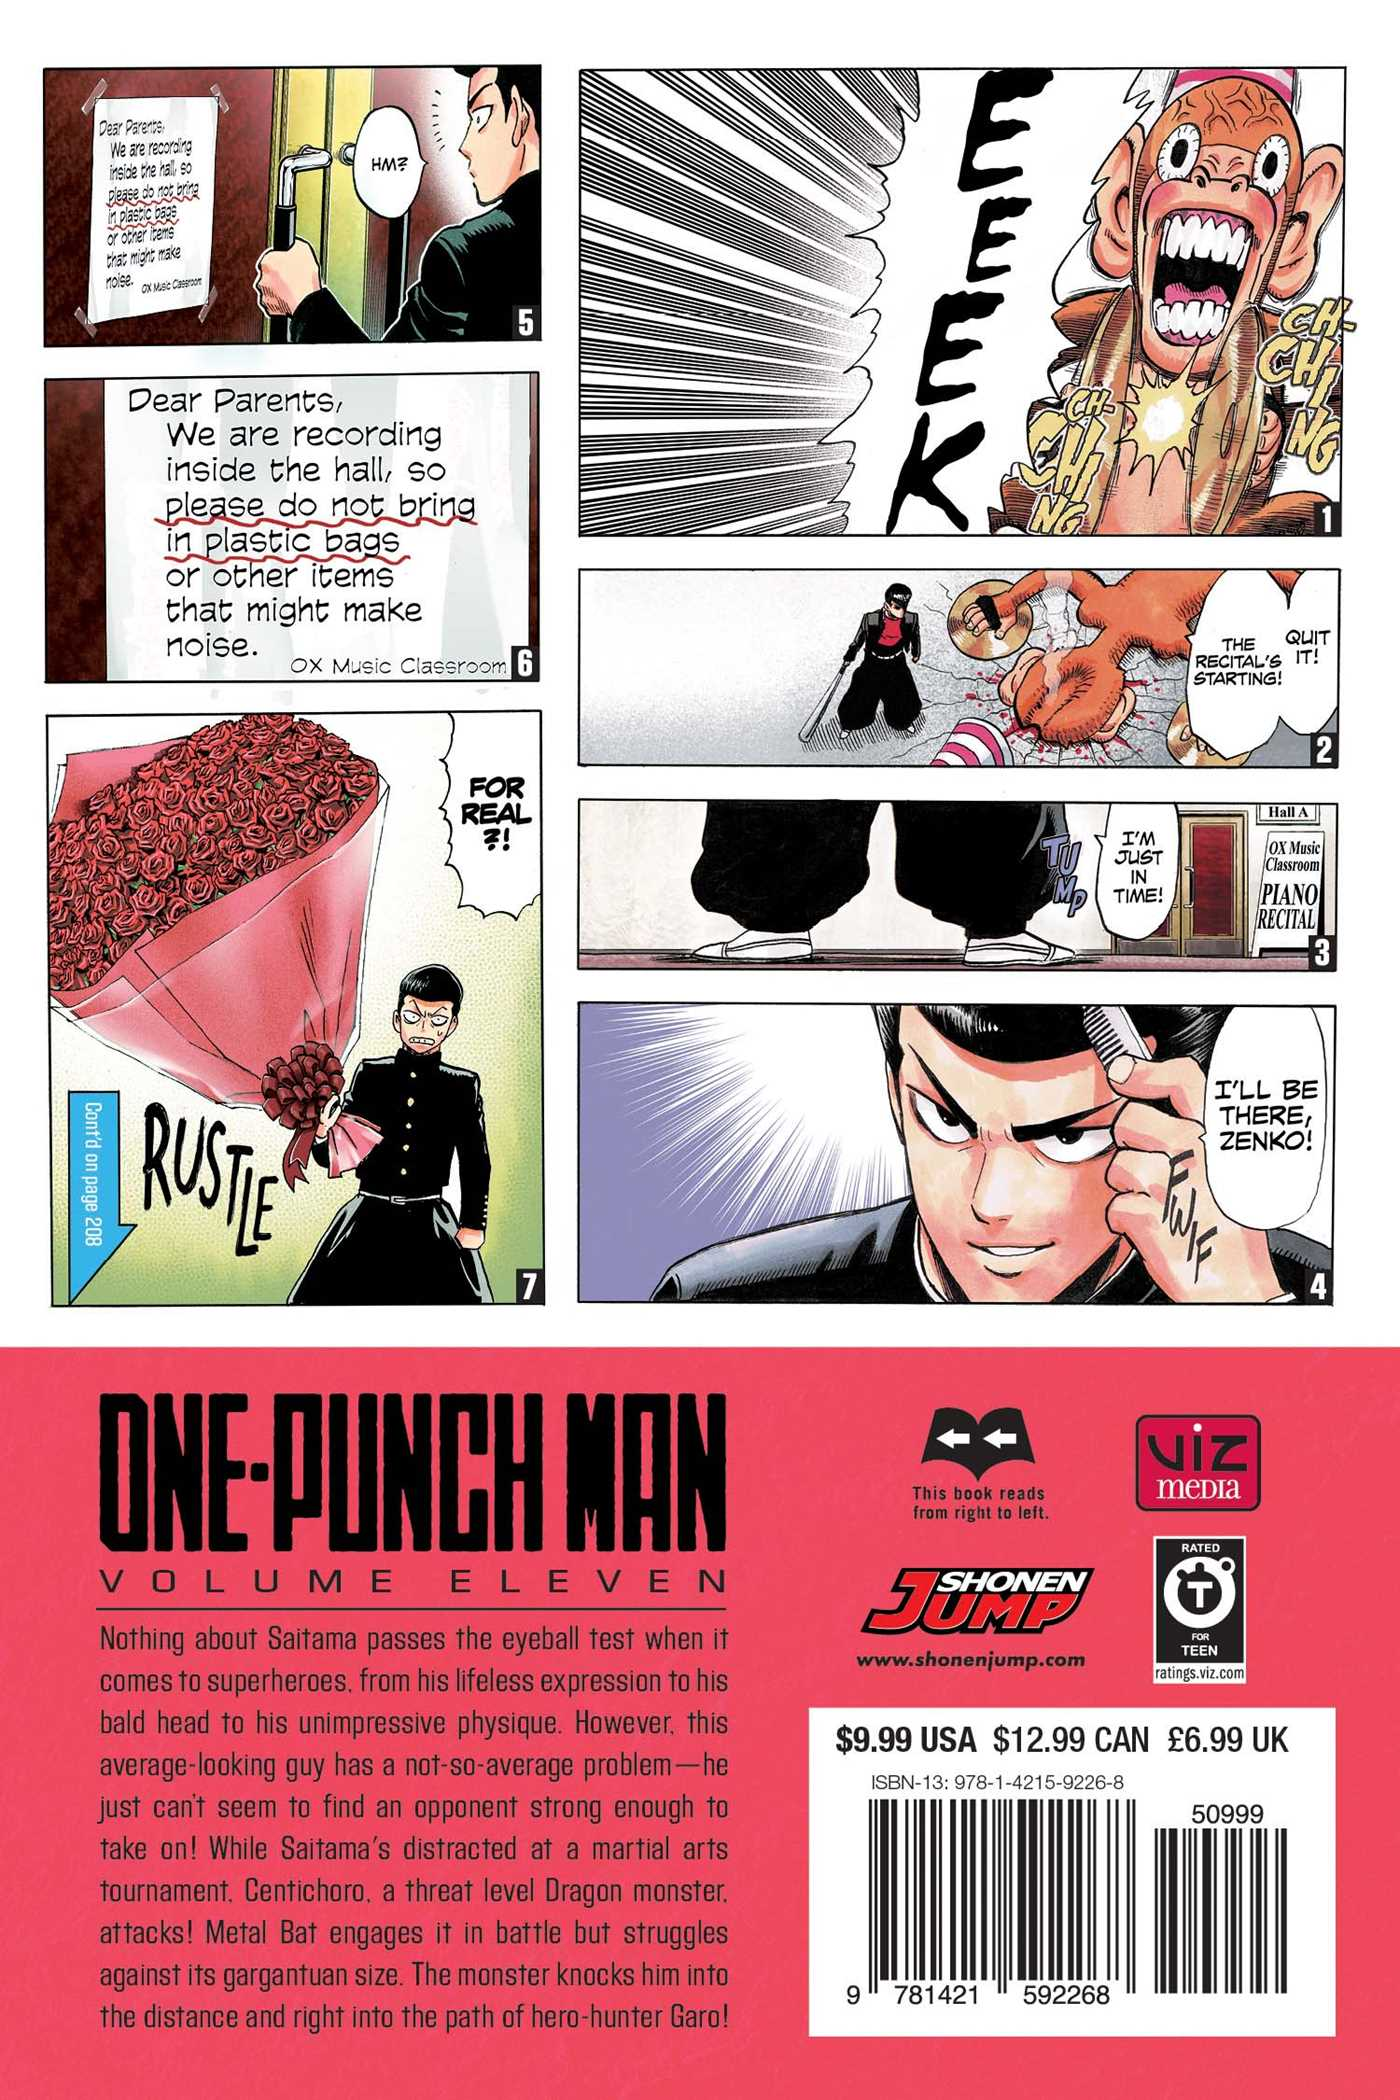 Volume 11 One Punch Man Wiki Fandom